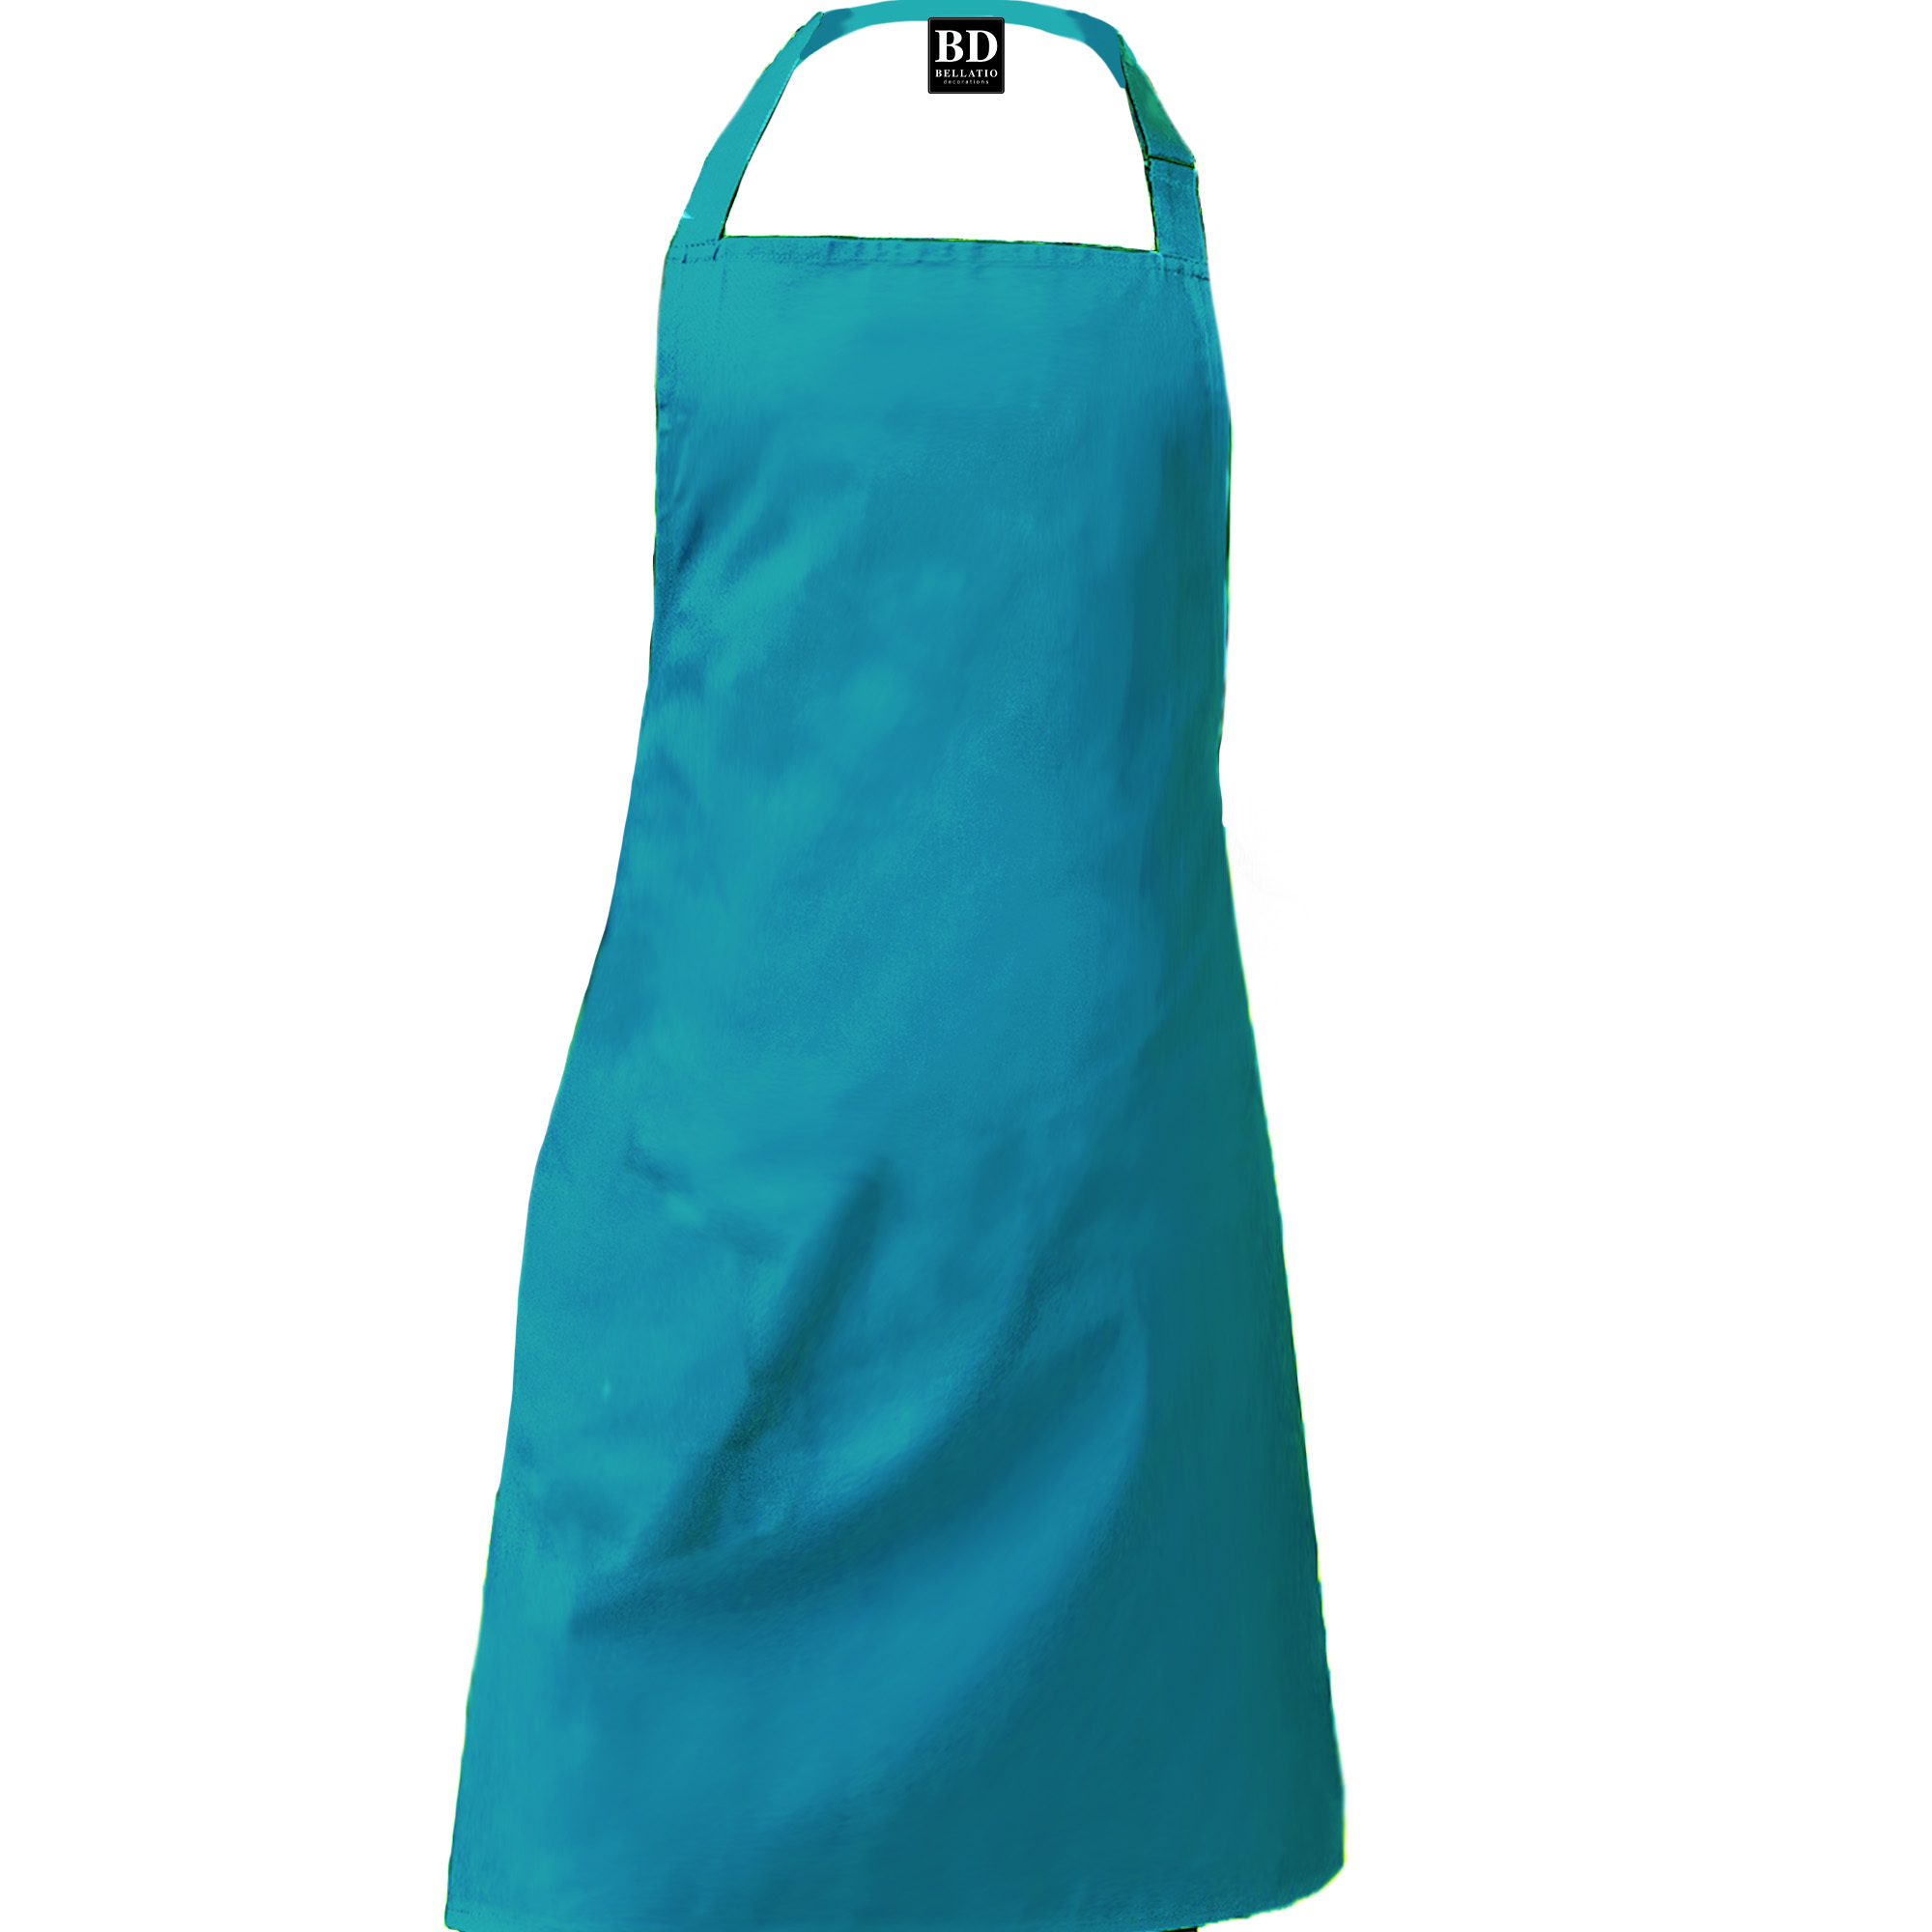 Chef kok barbeque schort / keukenschort turquoise blauw voor her